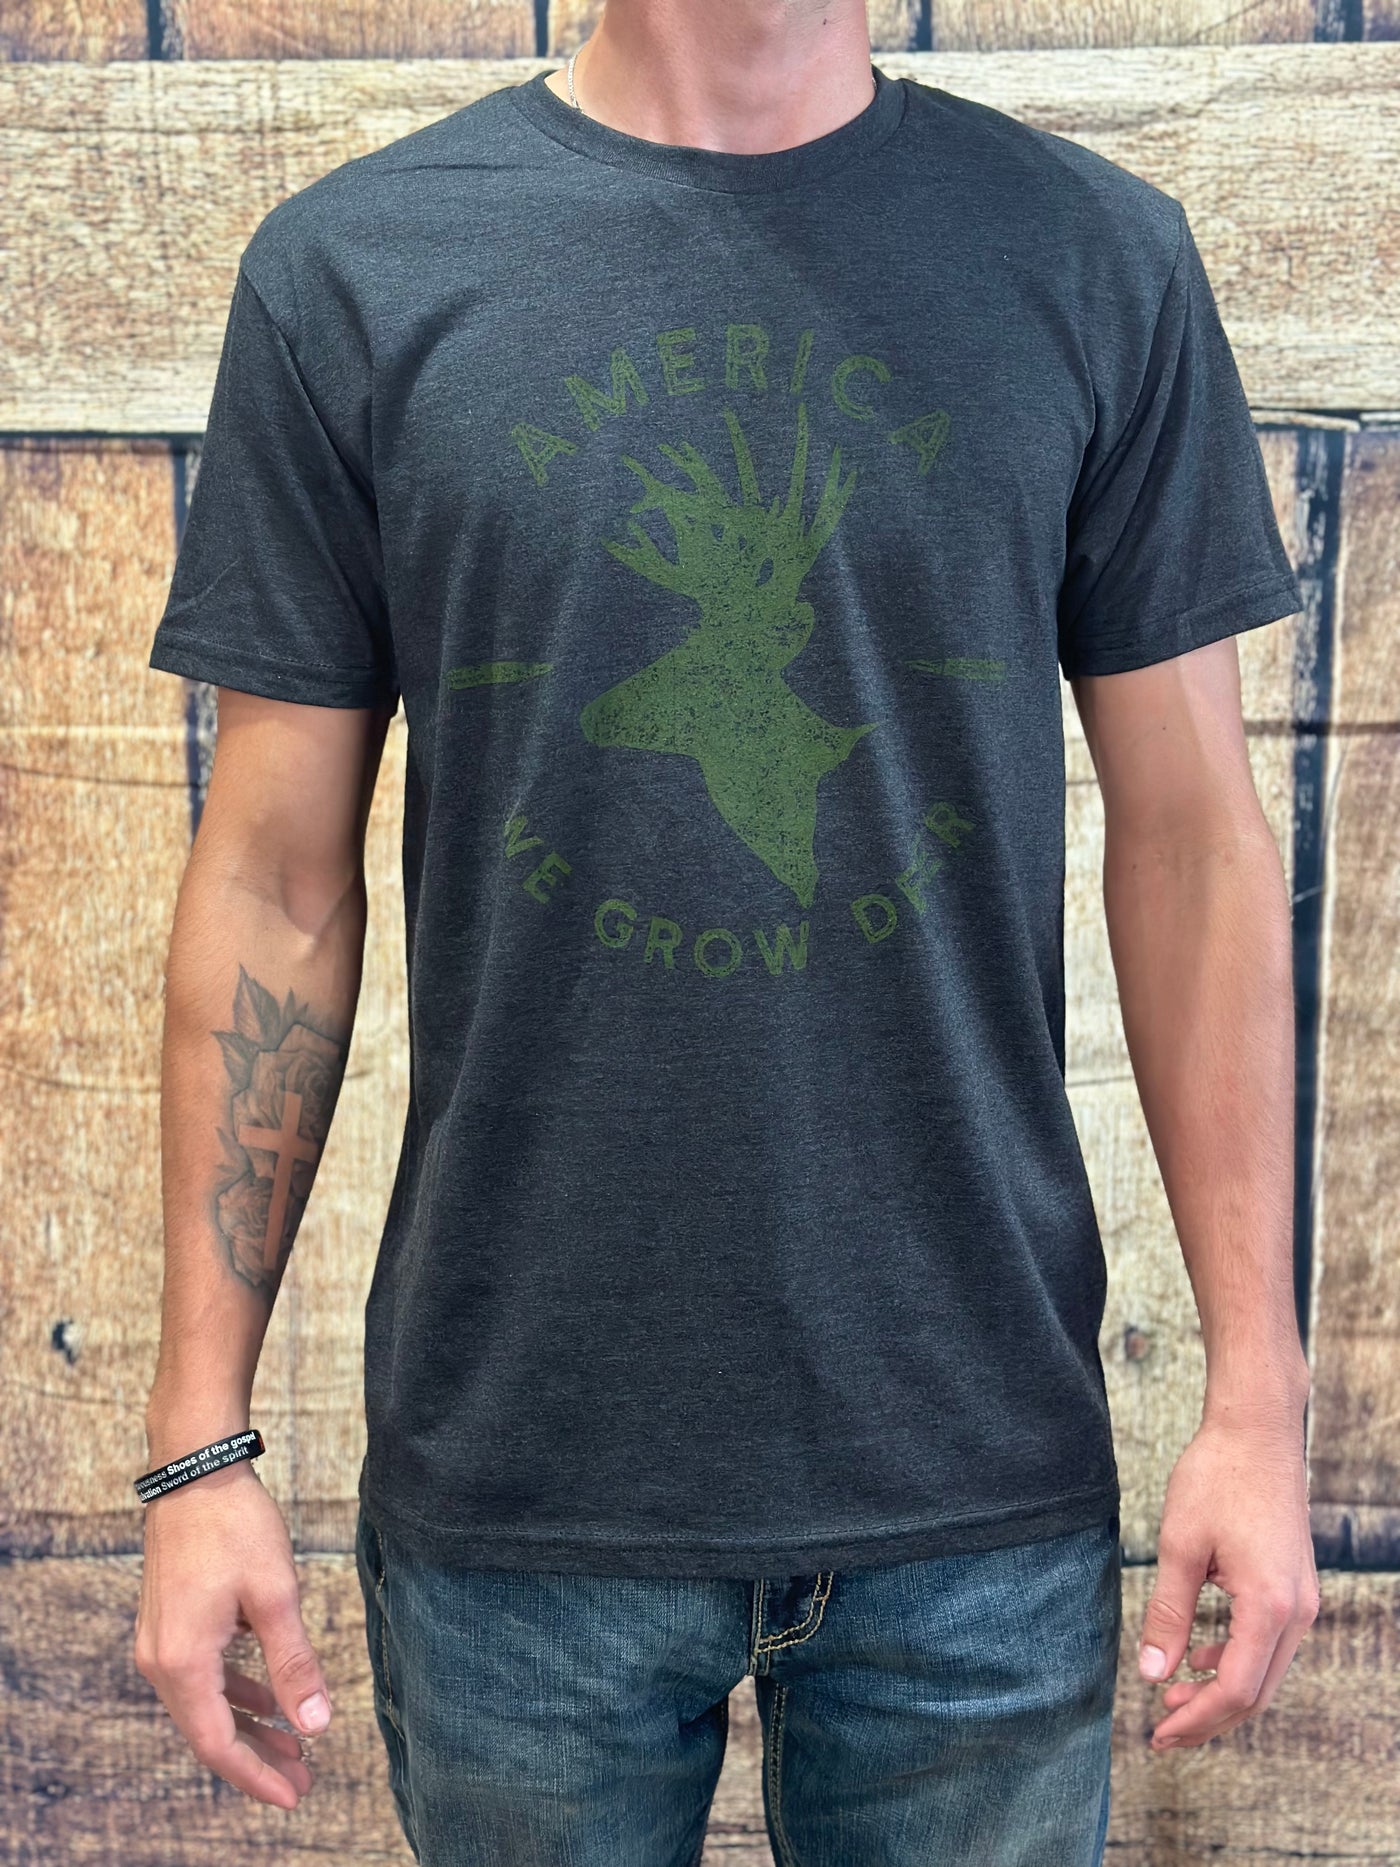 America"We Grow Deer" Graphic Tee in Black